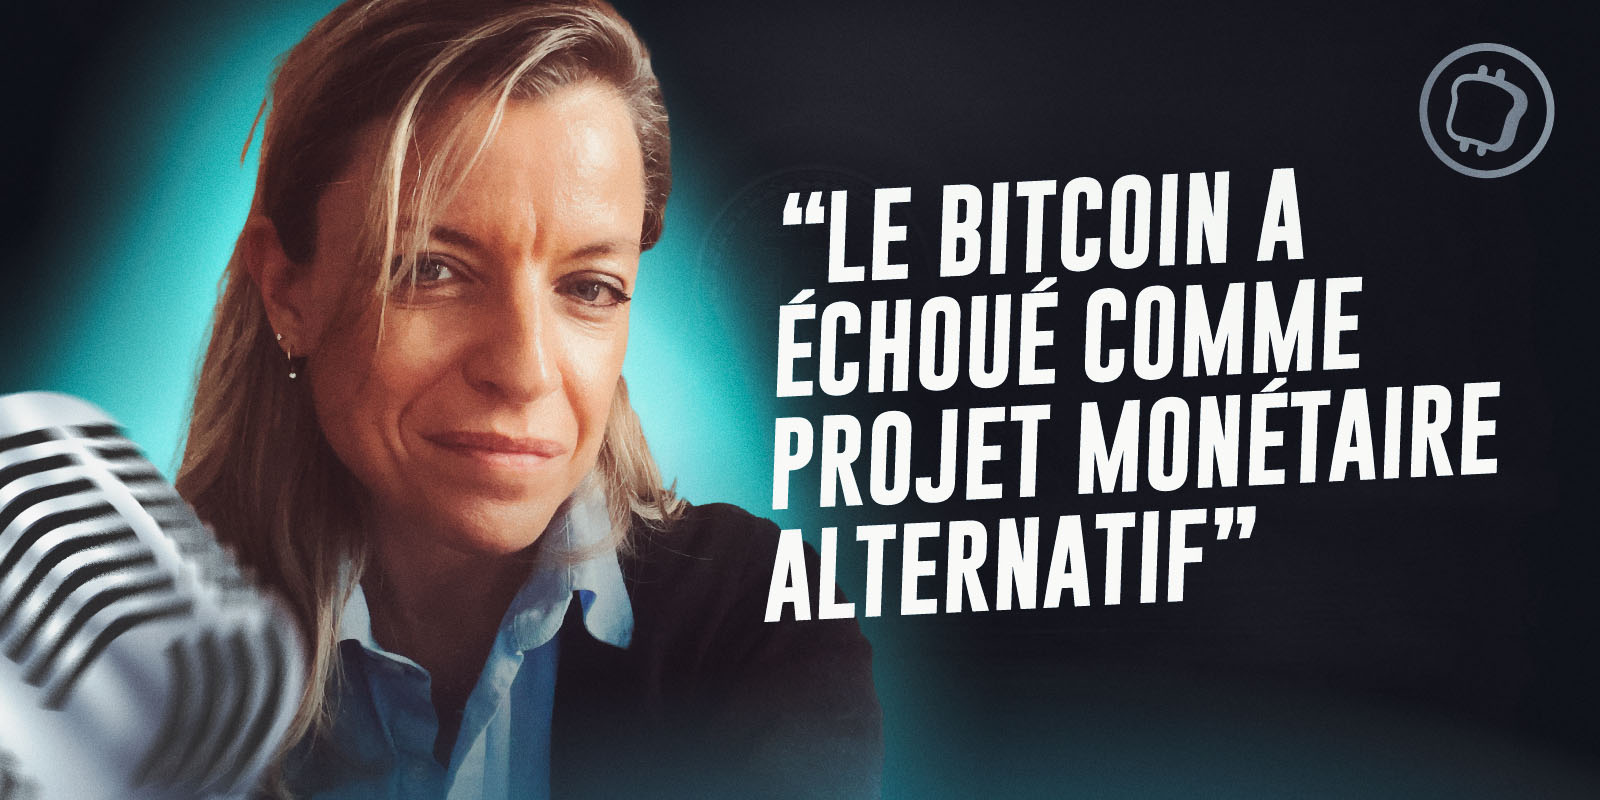 « Le Bitcoin a échoué comme projet monétaire alternatif » – Entretien avec Odile Laguerre-Lakomski, chercheuse au CRIISEA